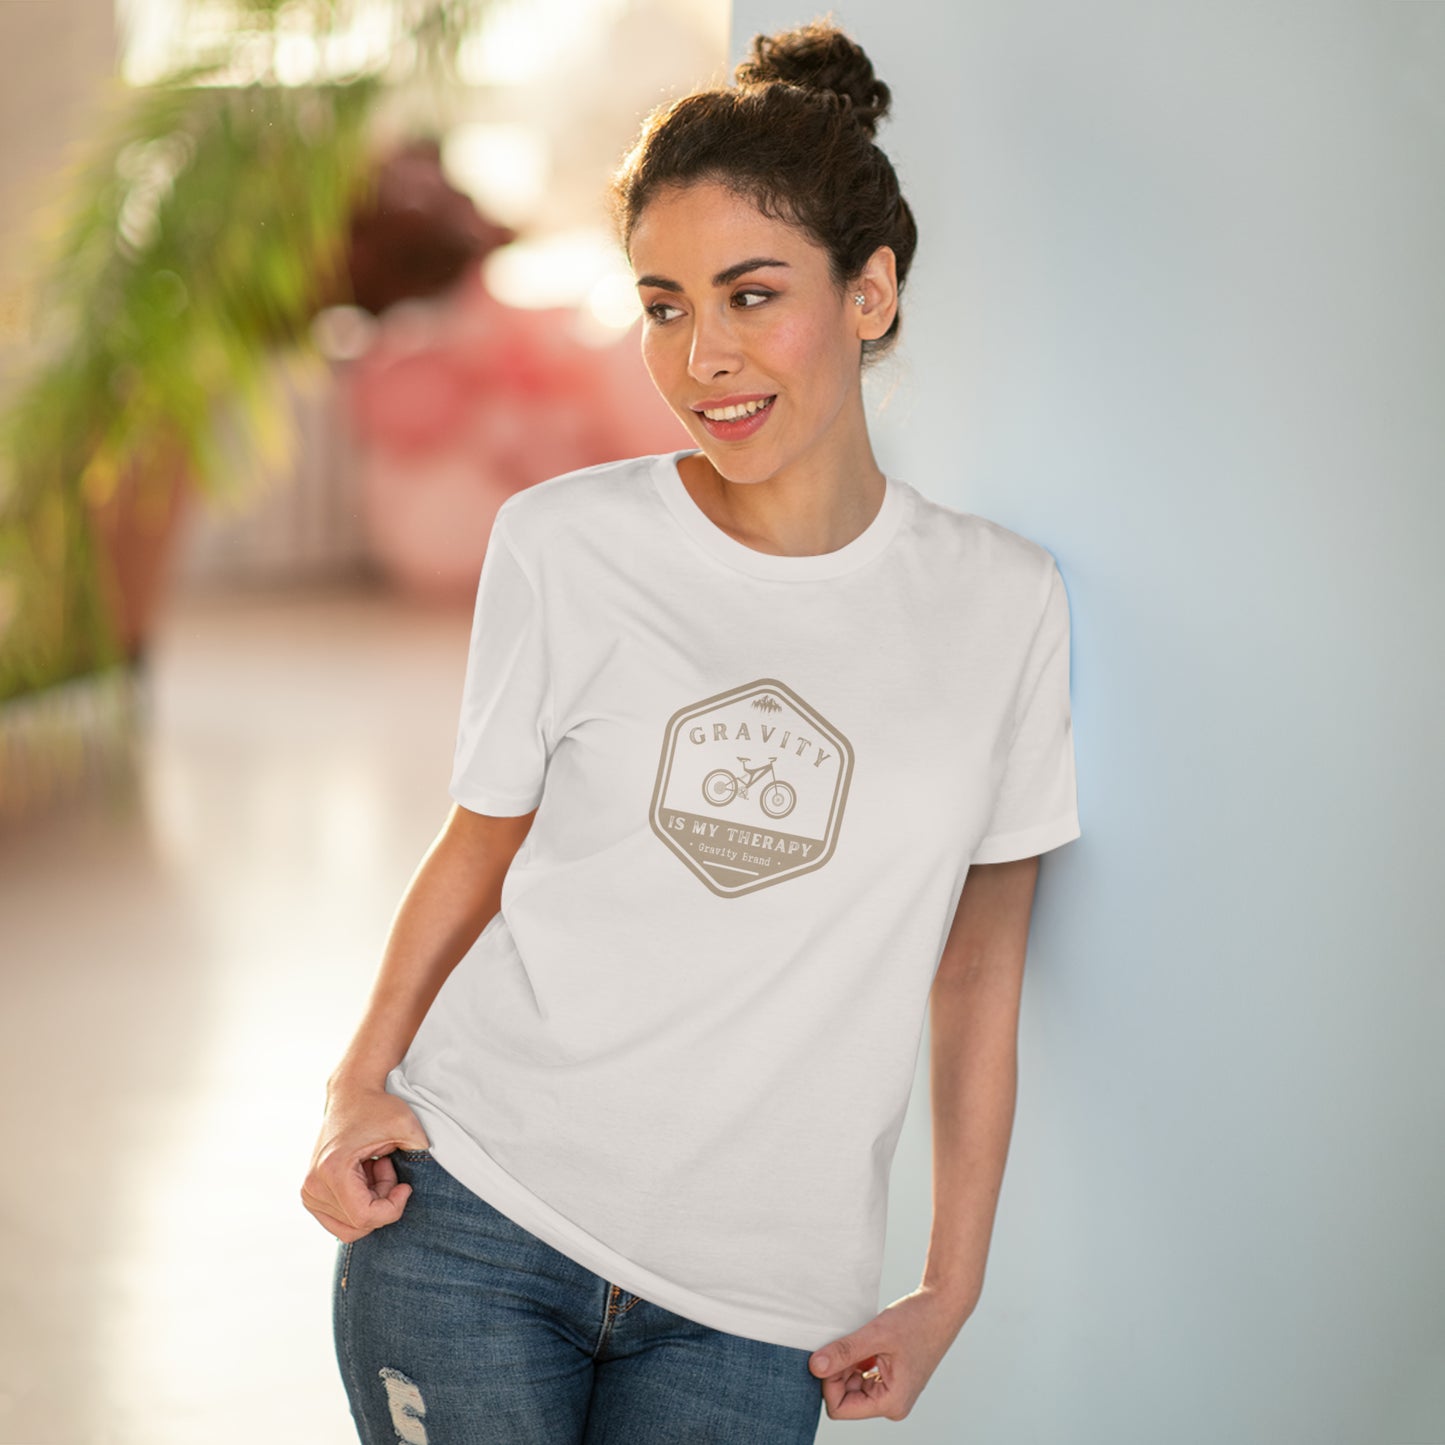 THERAPY | Camiseta (100% algodón orgánico) - Unisex